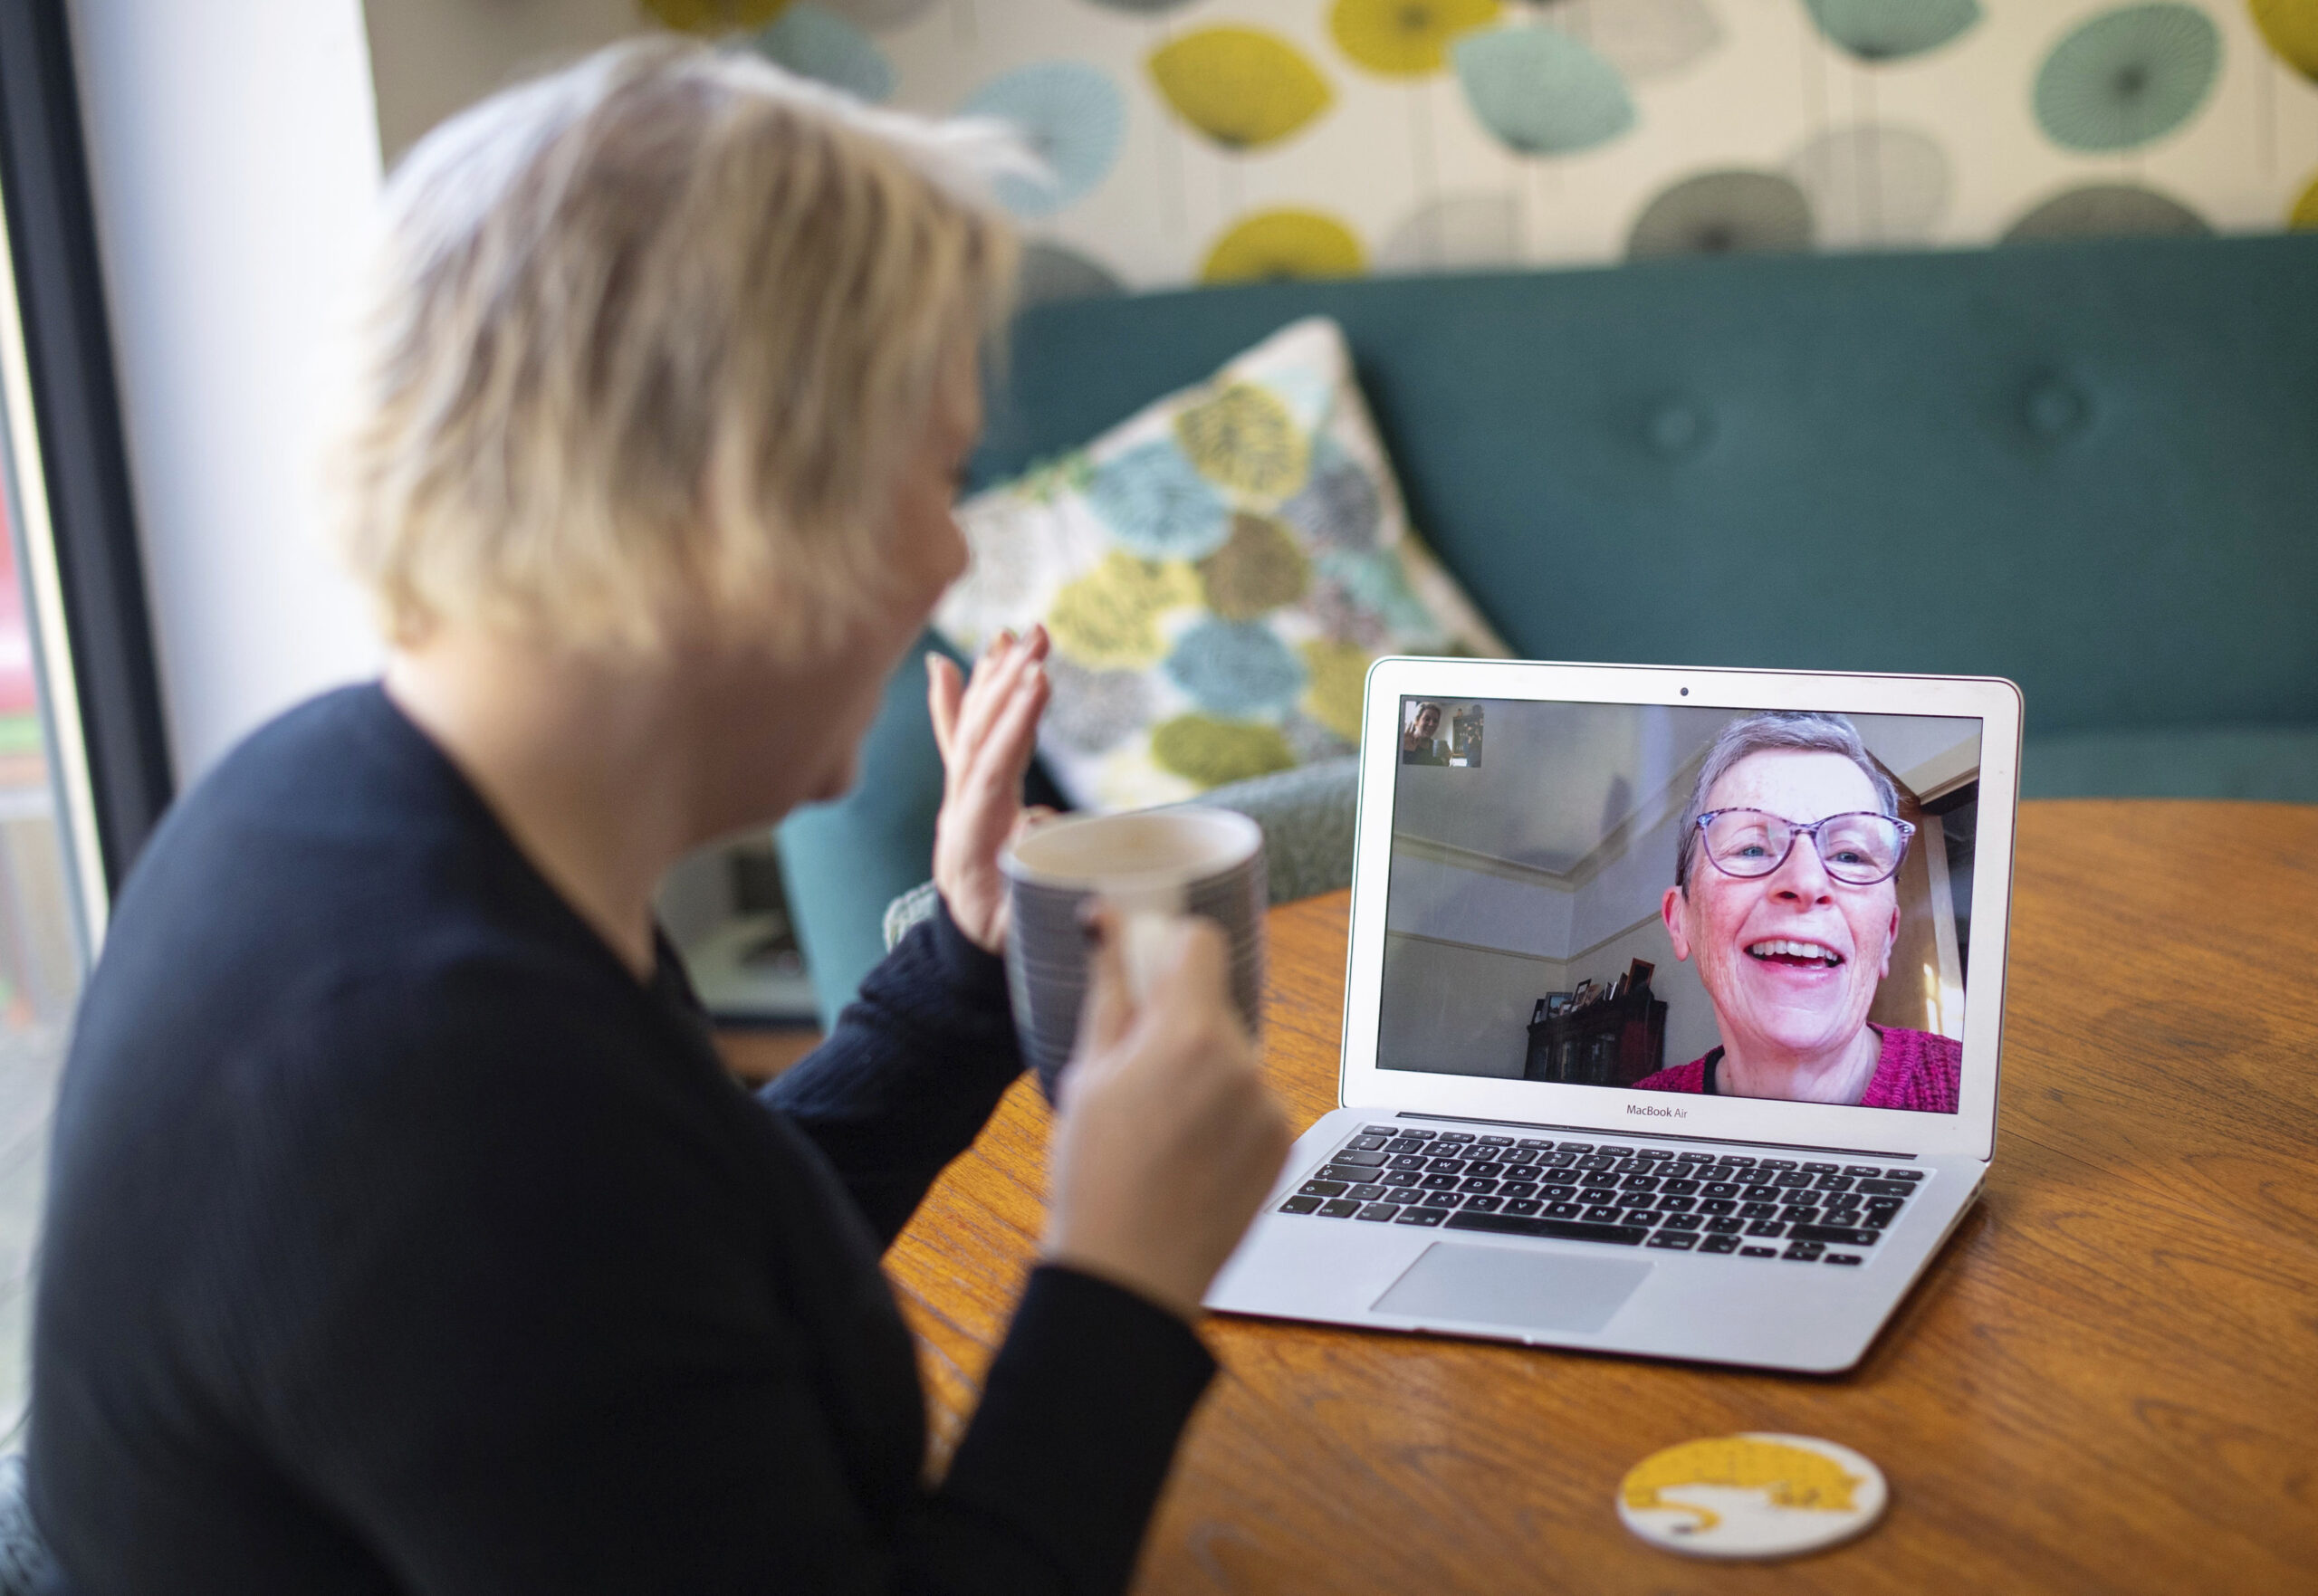 Helen Walters, left, talks to her mother Gillian using video calling